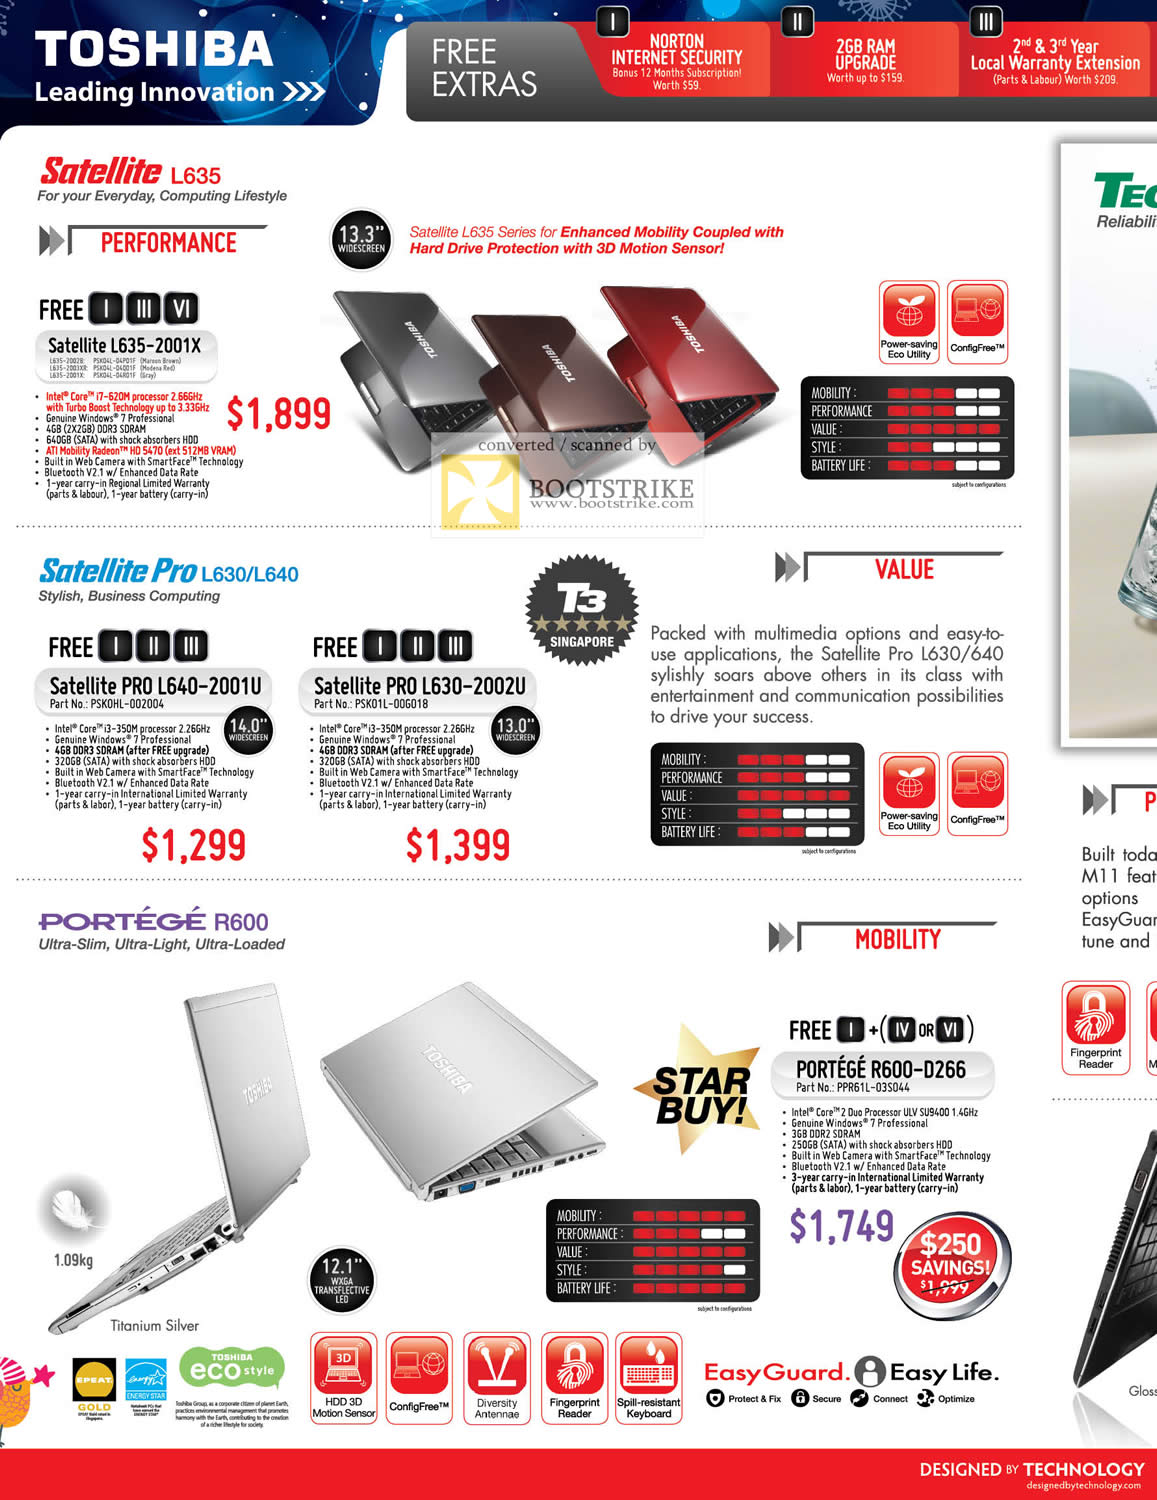 Sitex 2010 price list image brochure of Toshiba Notebooks Satellite L635 2001X Pro L630 L640 2001U 2002U R600 D266